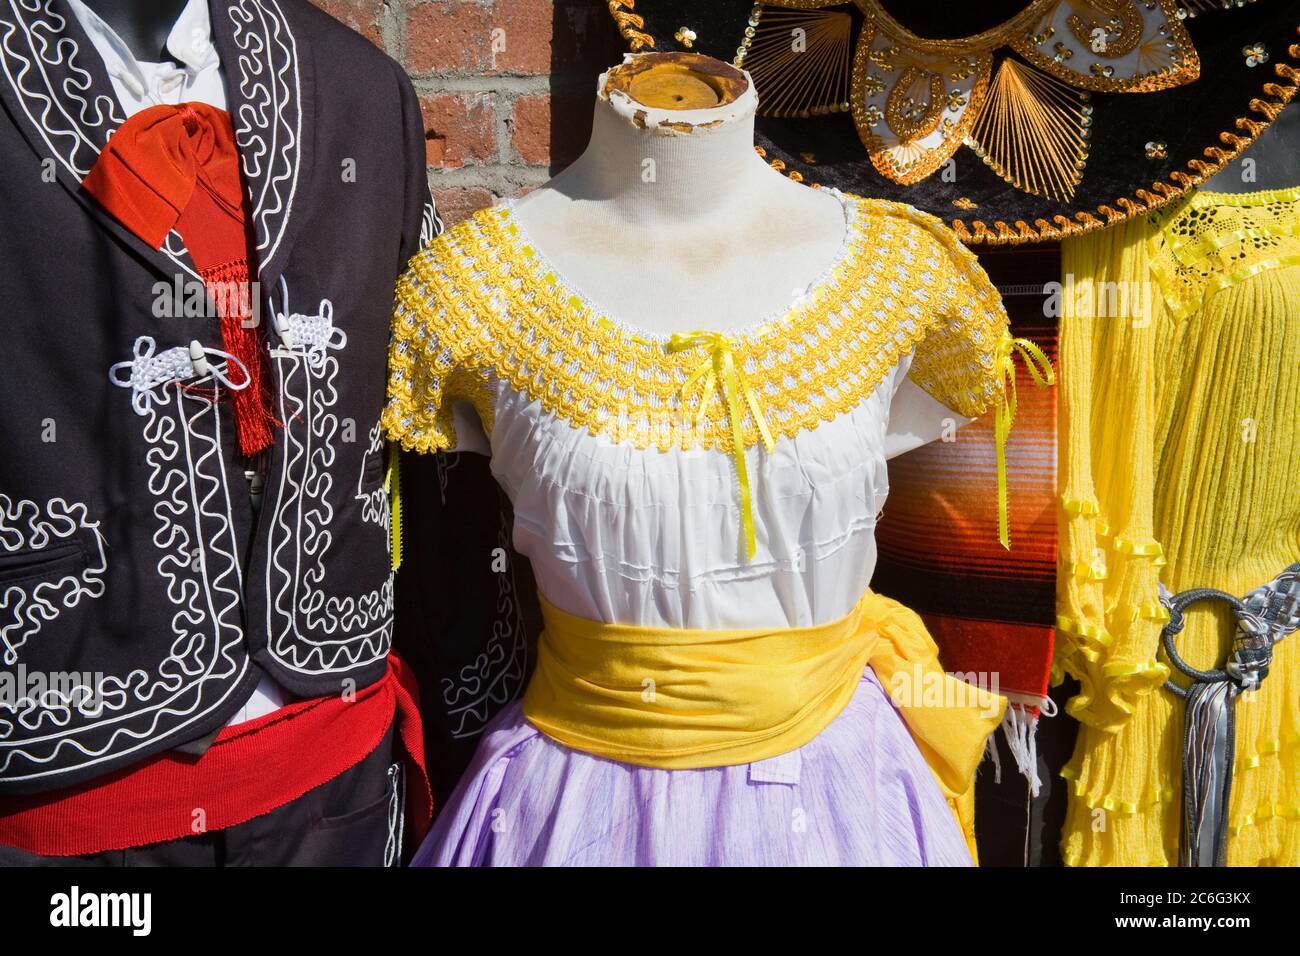 Magasin de vêtements mexicains, Olvera Street, monument historique d'El Pueblo, Los Angeles, Californie, États-Unis Banque D'Images